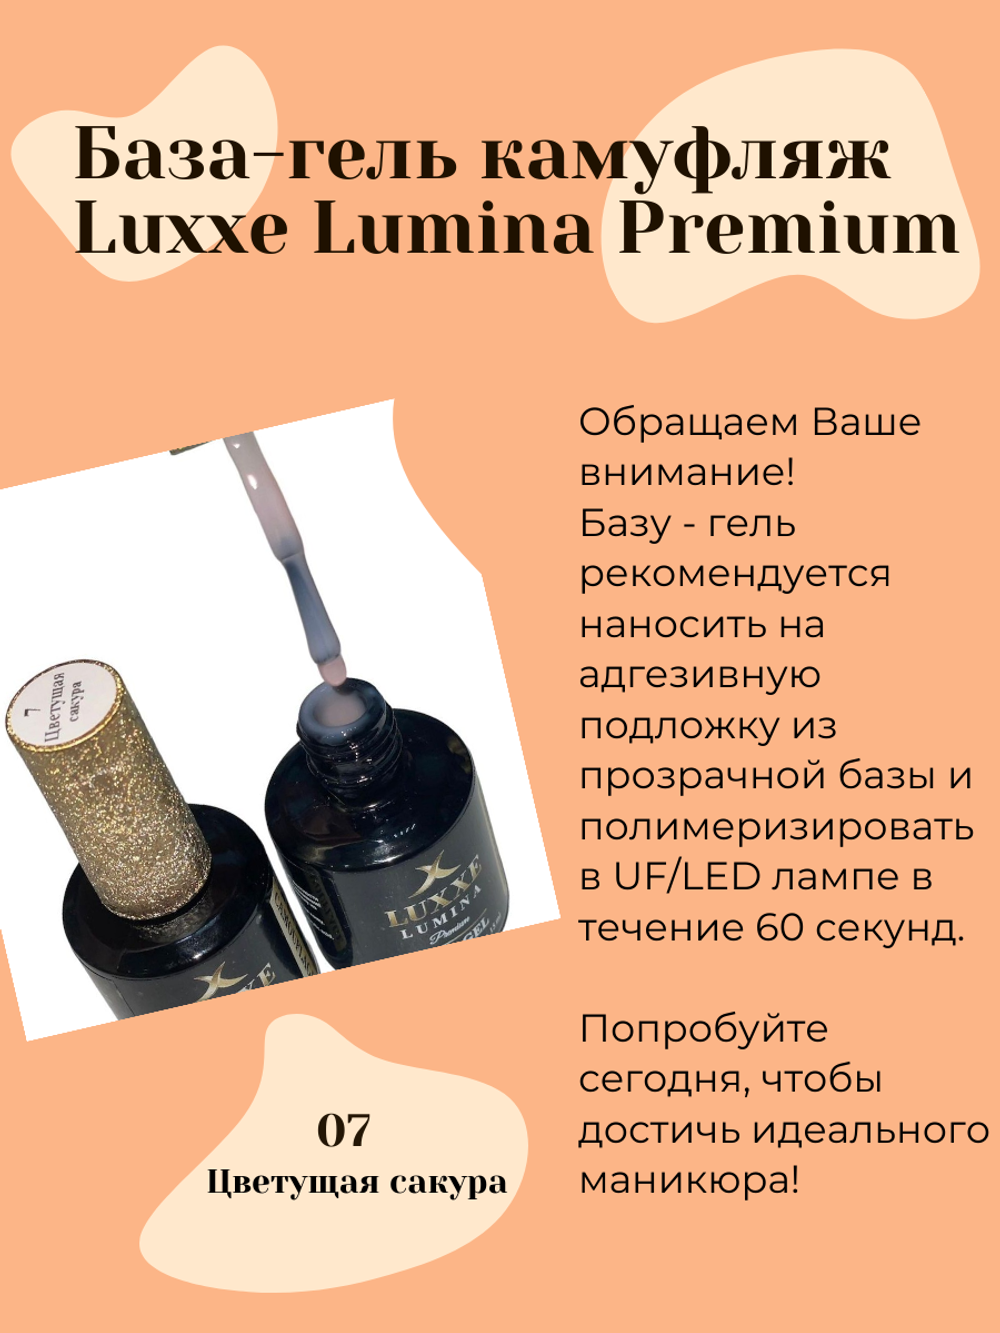 База-гель для ногтей камуфляж Luxxe Lumina Premium, цветущая сакура №7